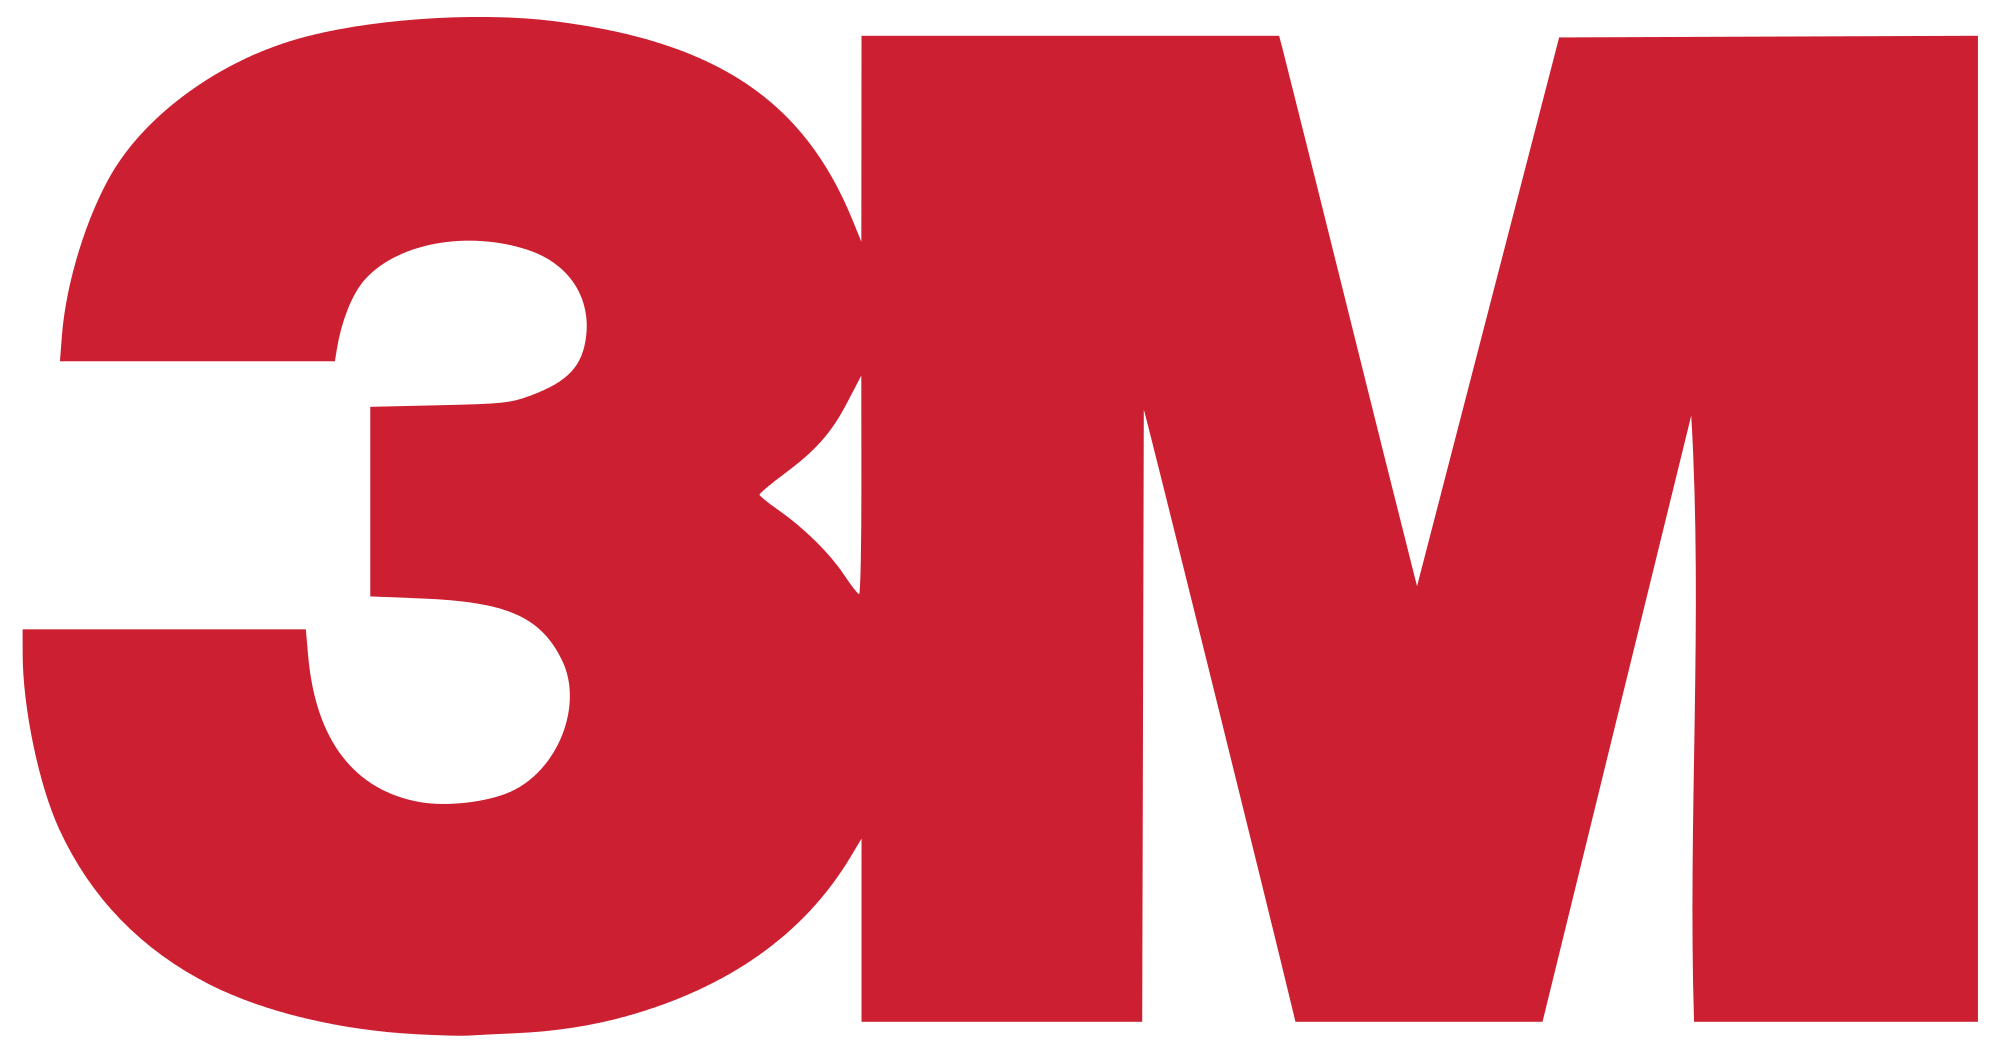 3m-logo-1